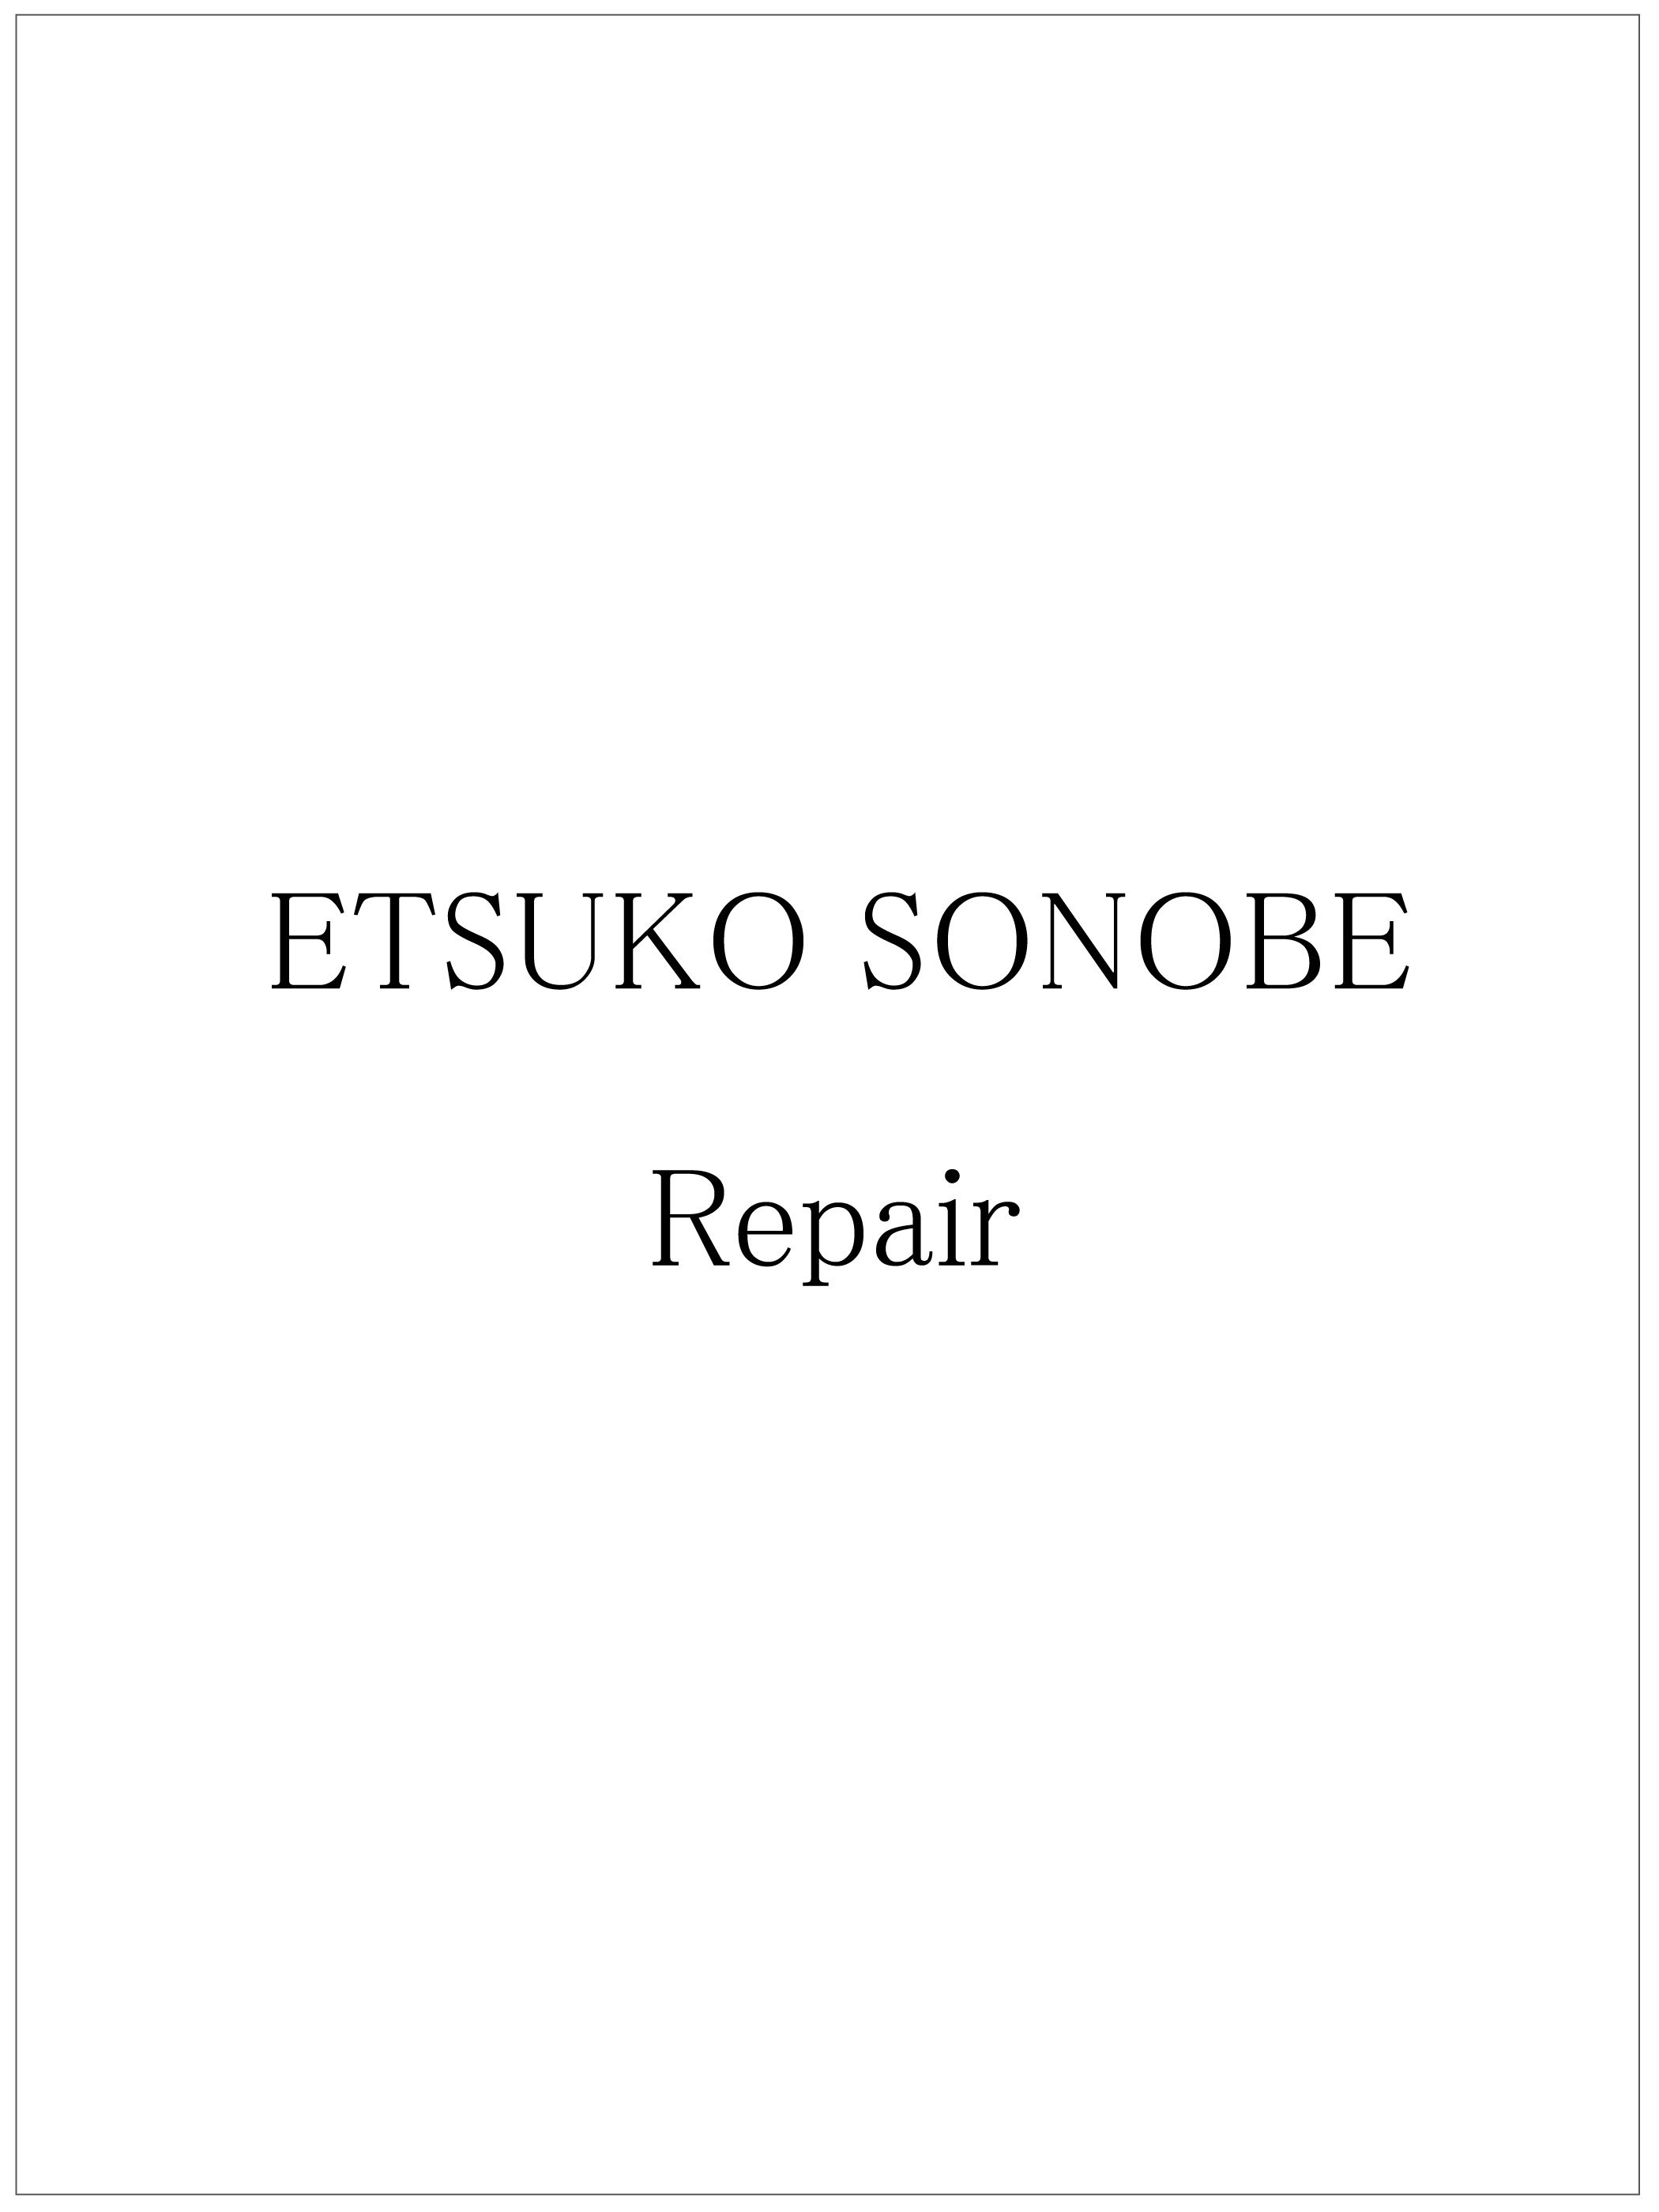 Etsuko Sonobe Repair (修理 / 加工)